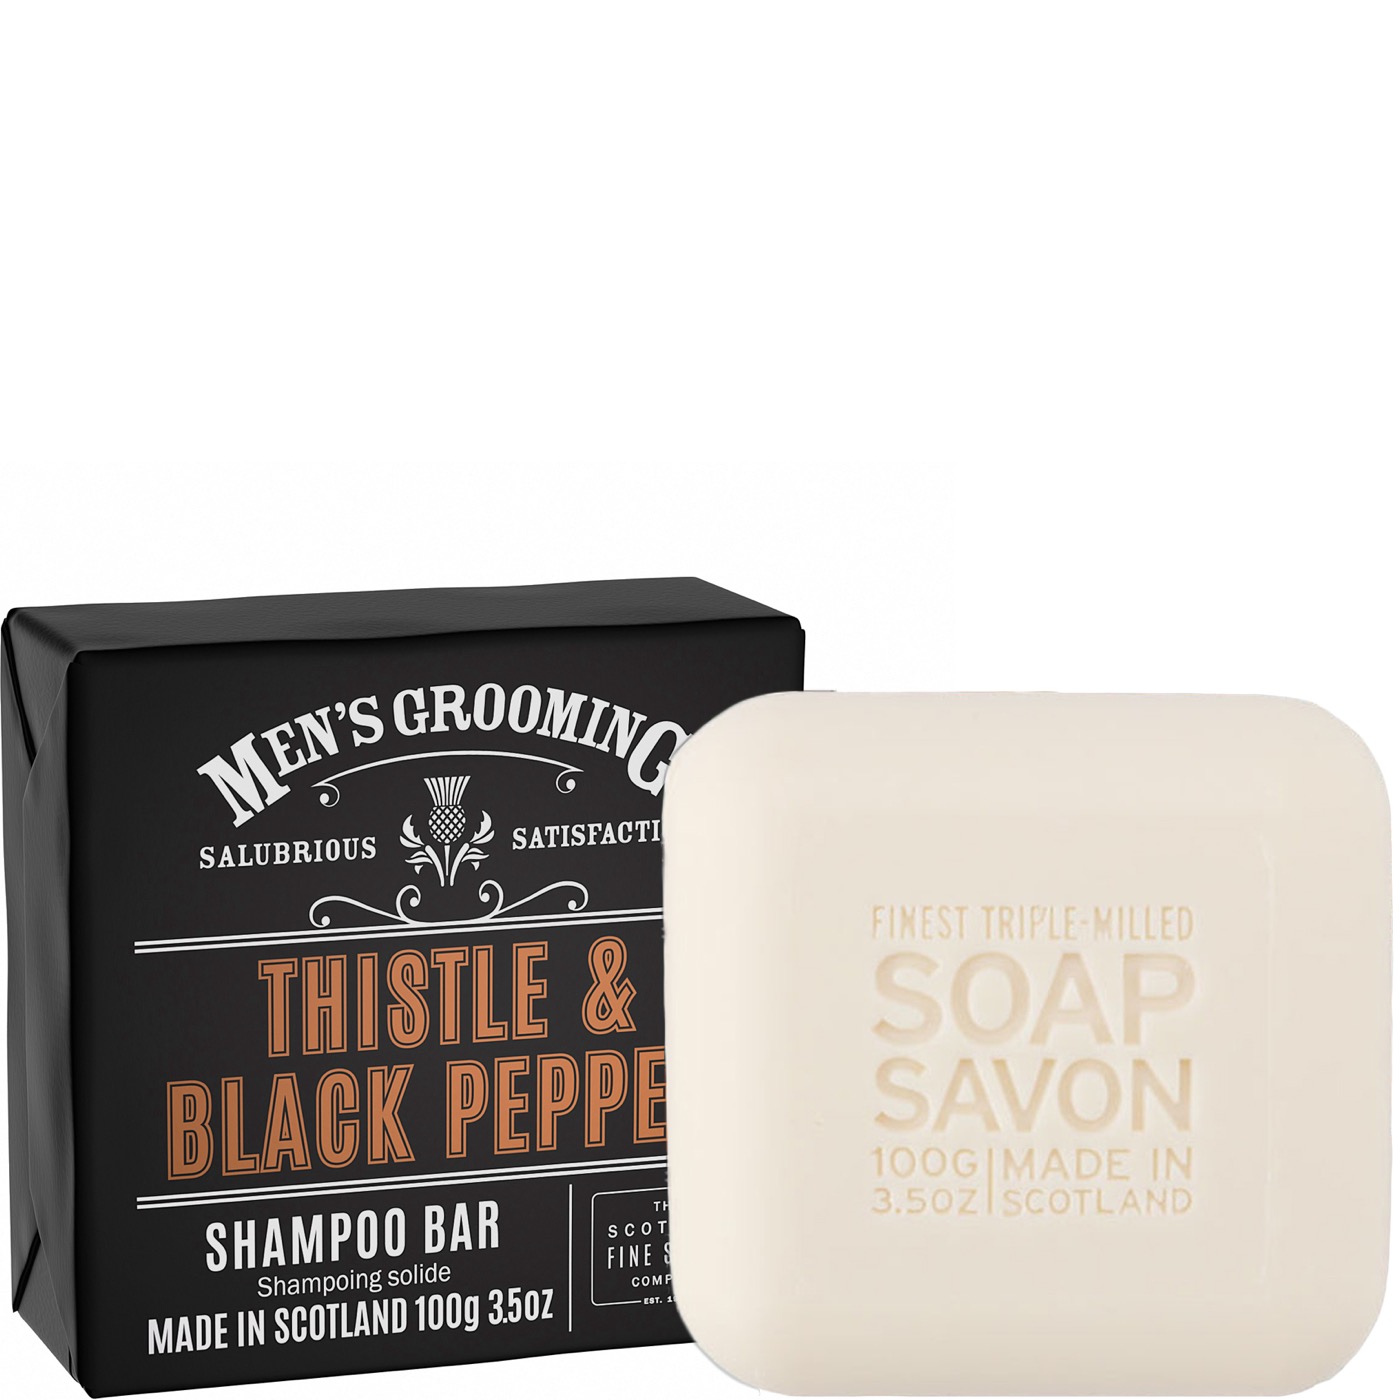 Shampoo bar Bar Thistle & Black Pepper - normaal haar & hoofdhuid